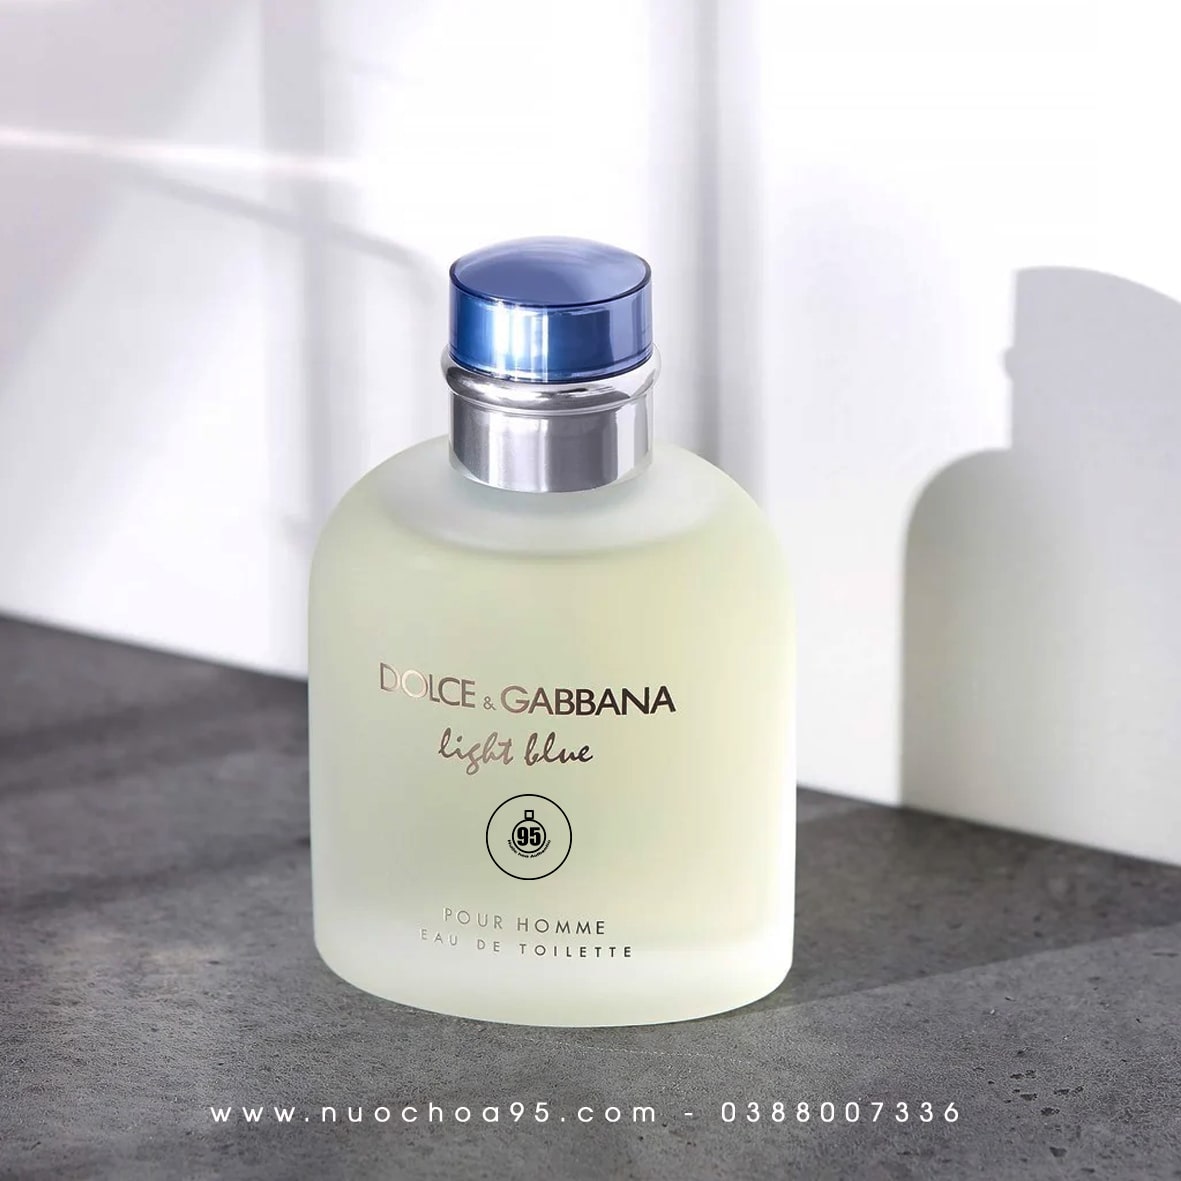 Review nước hoa Dolce Gabbana mùi nào thơm nhất? - Ảnh 3